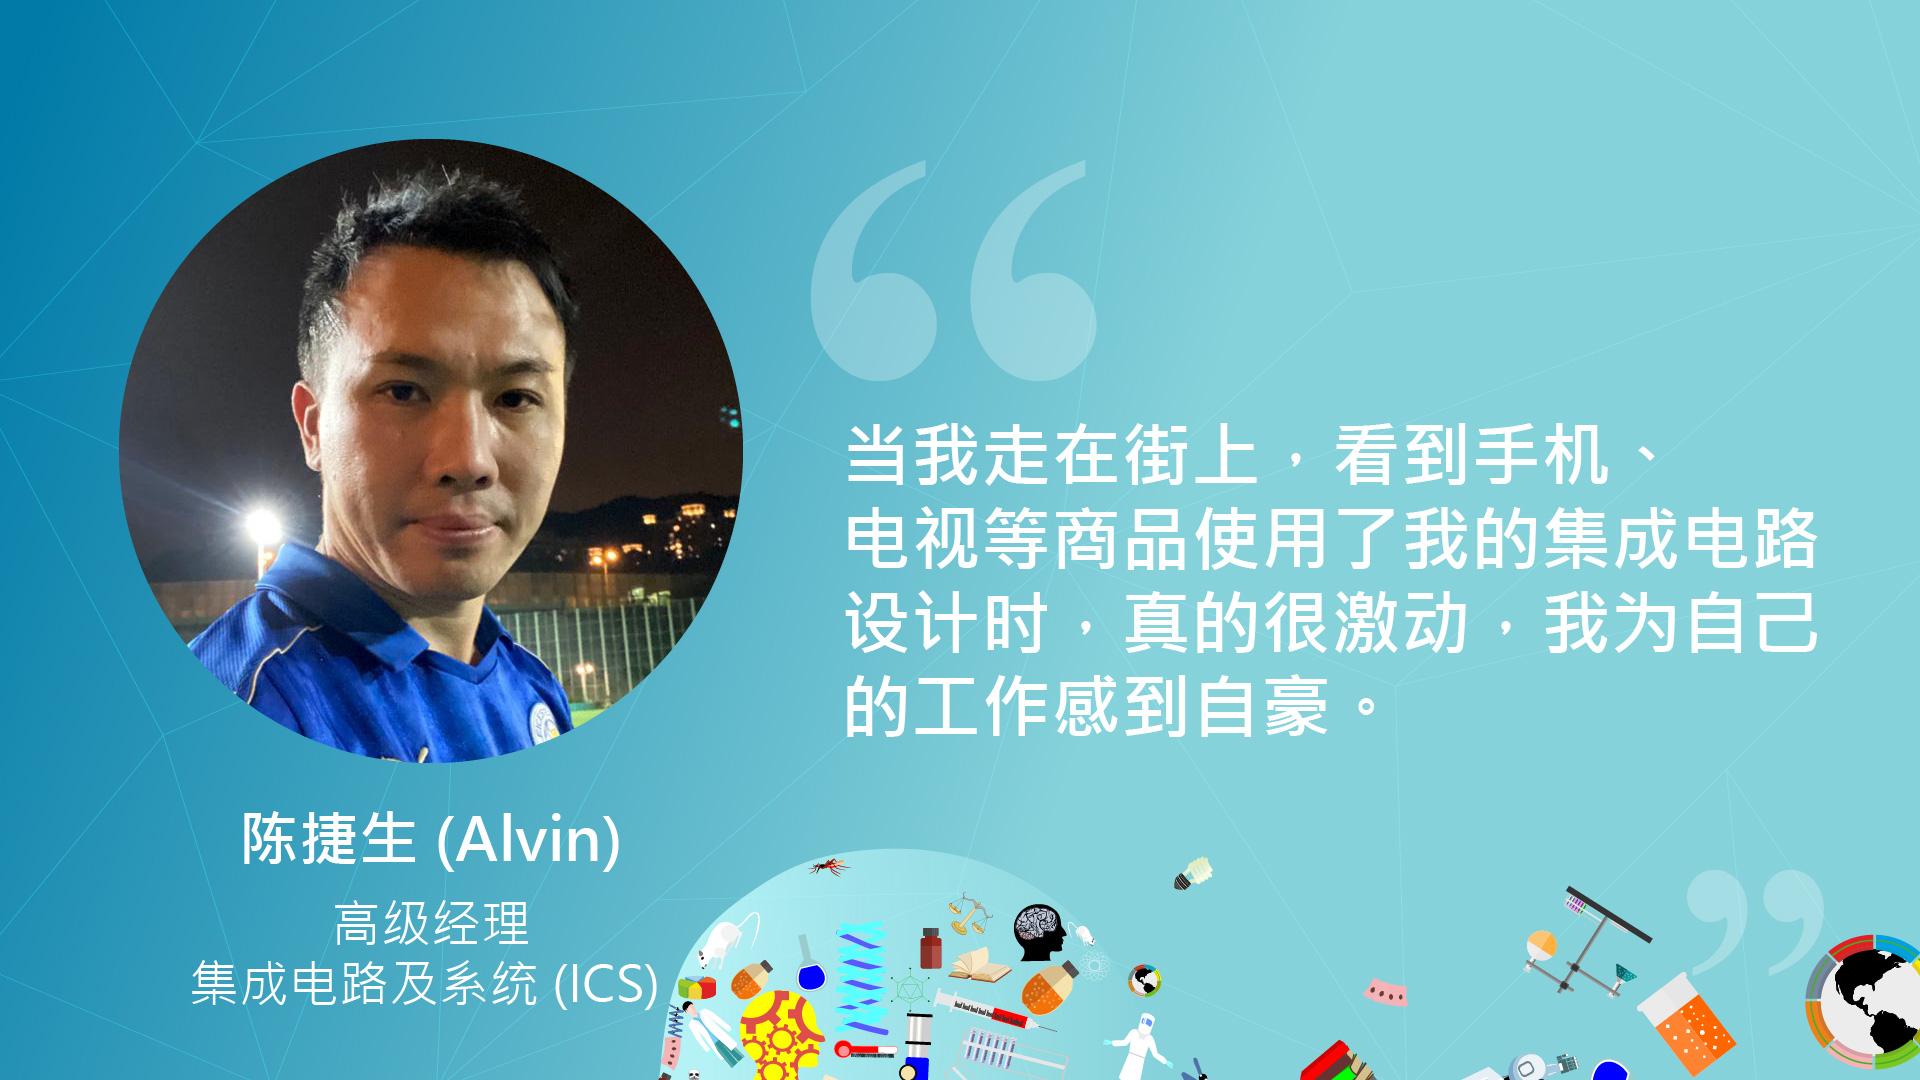 Alvin Chan Chit Sang